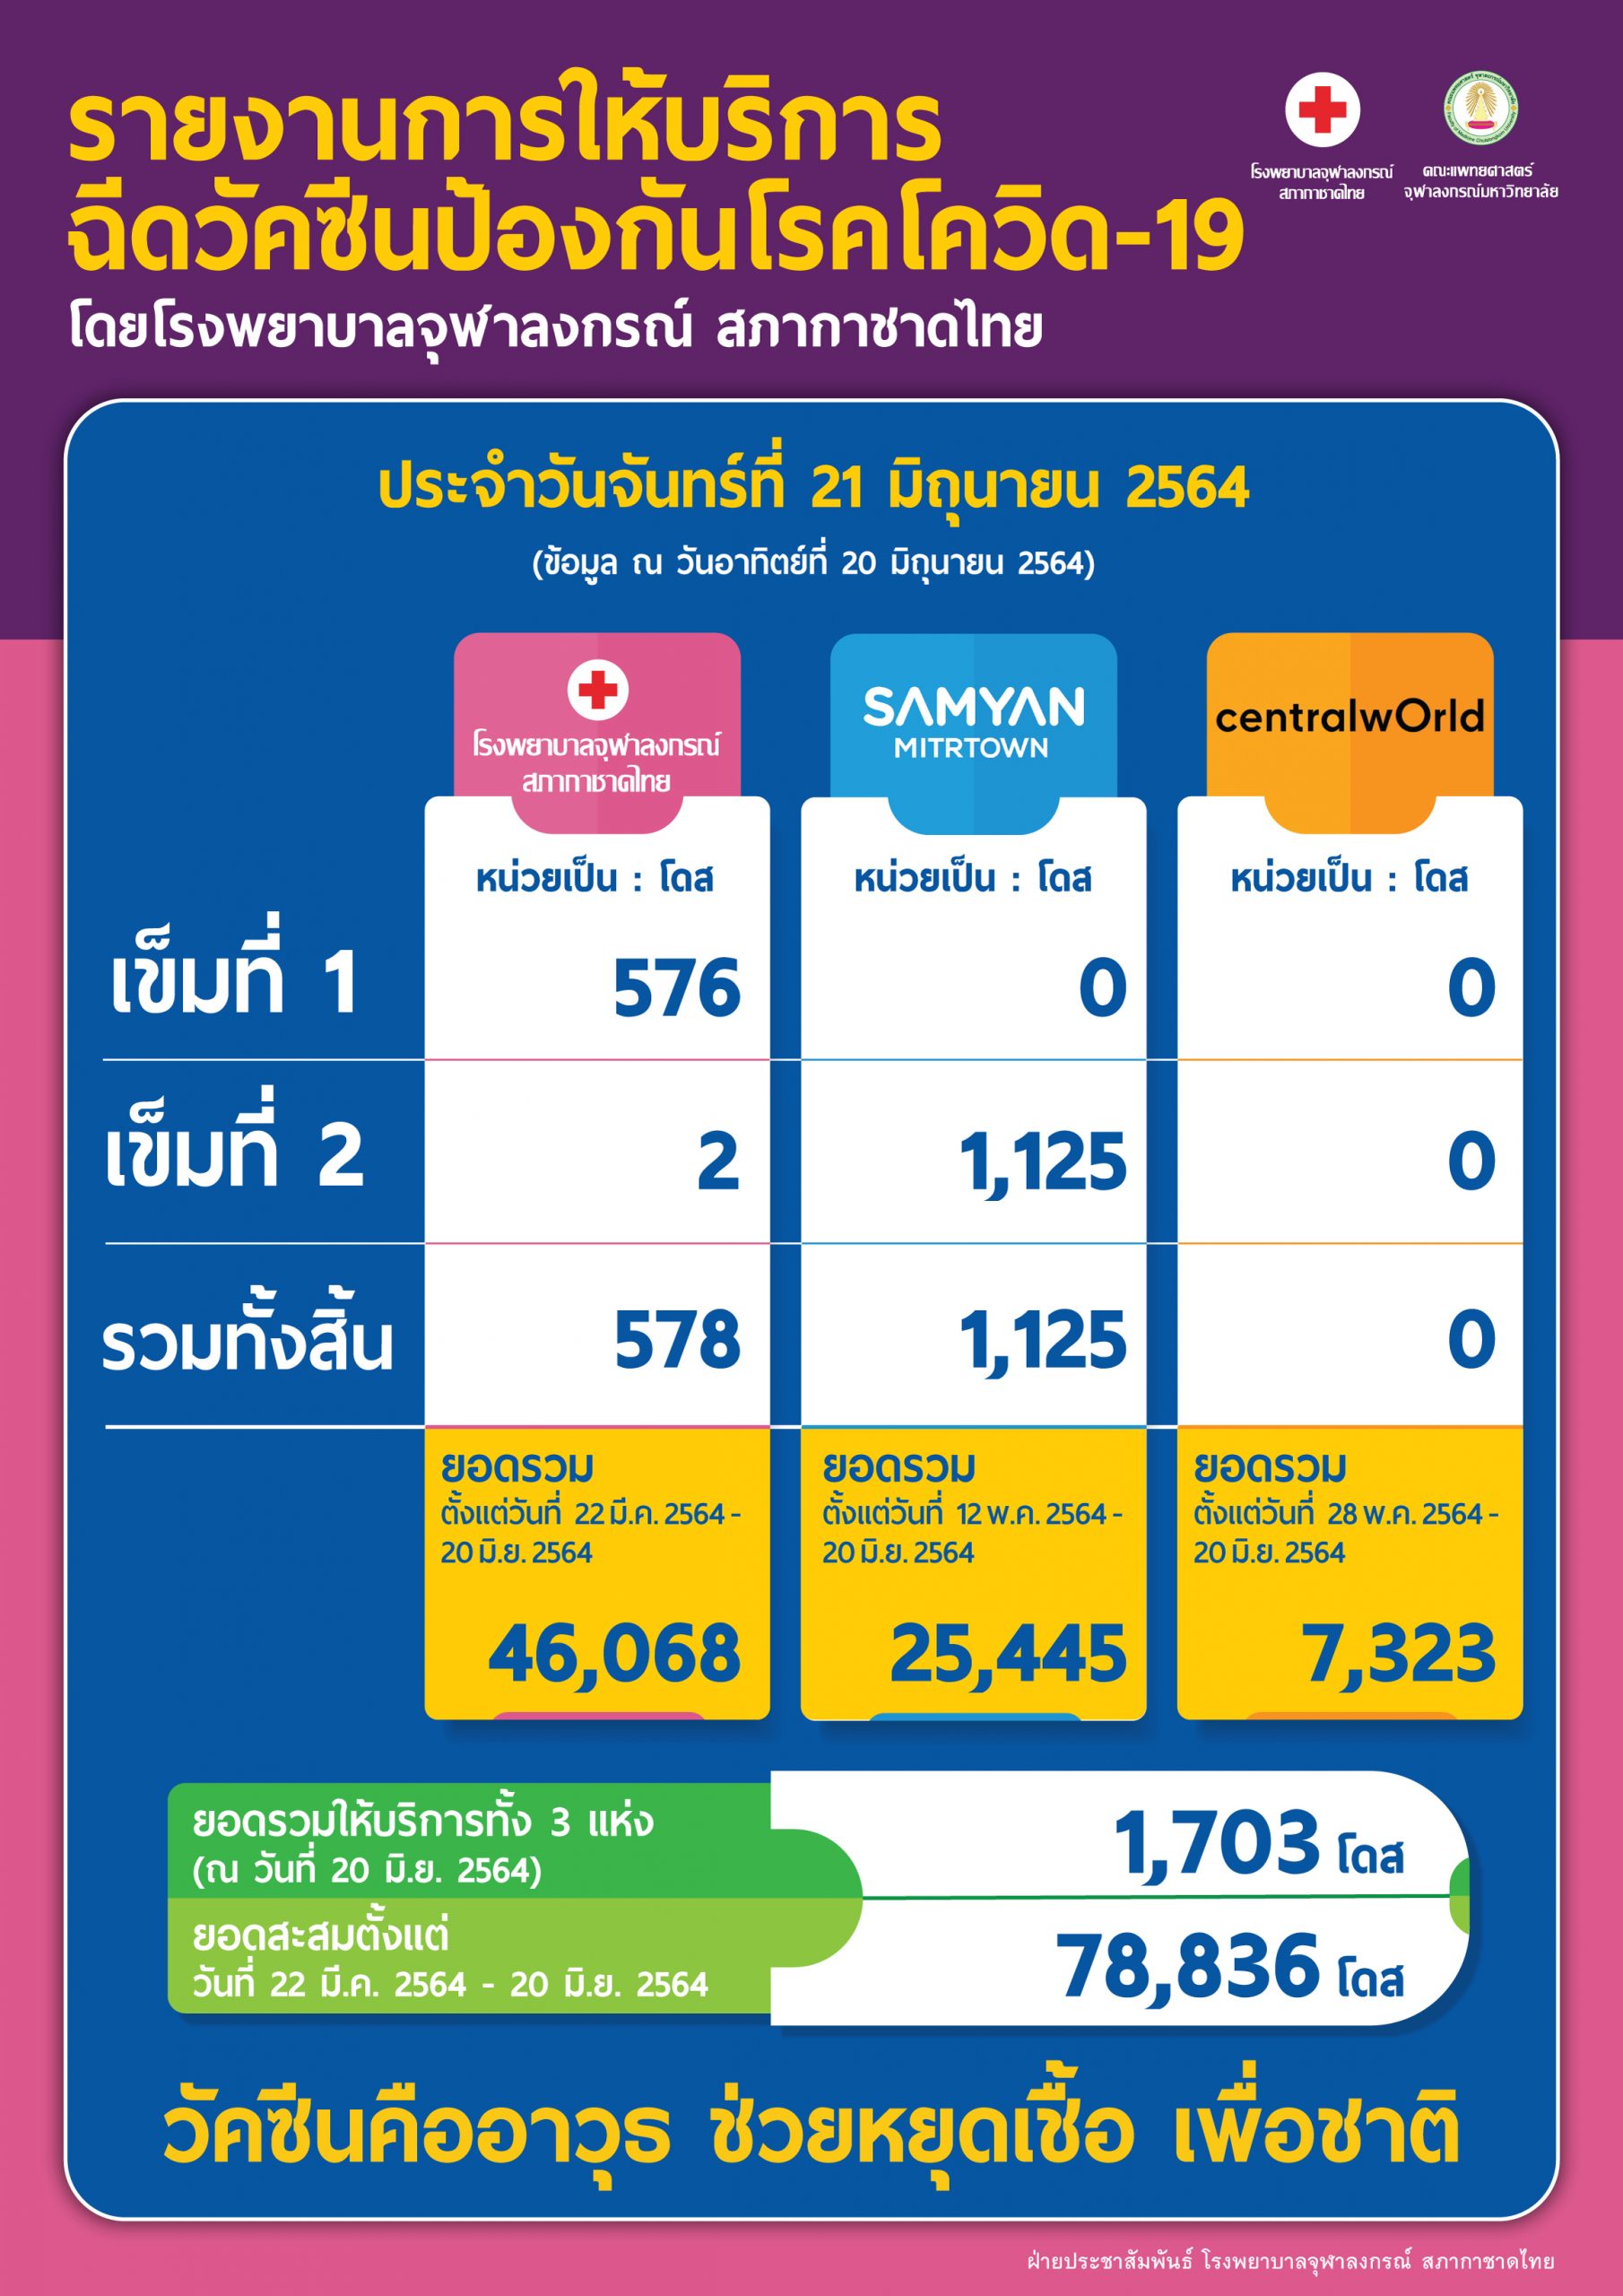 รายงานการให้บริการฉีดวัคซีนป้องกันโรคโควิด-19 โดยโรงพยาบาลจุฬาลงกรณ์ สภากาชาดไทย ประจำวันจันทร์ที่ 21 มิถุนายน 2564